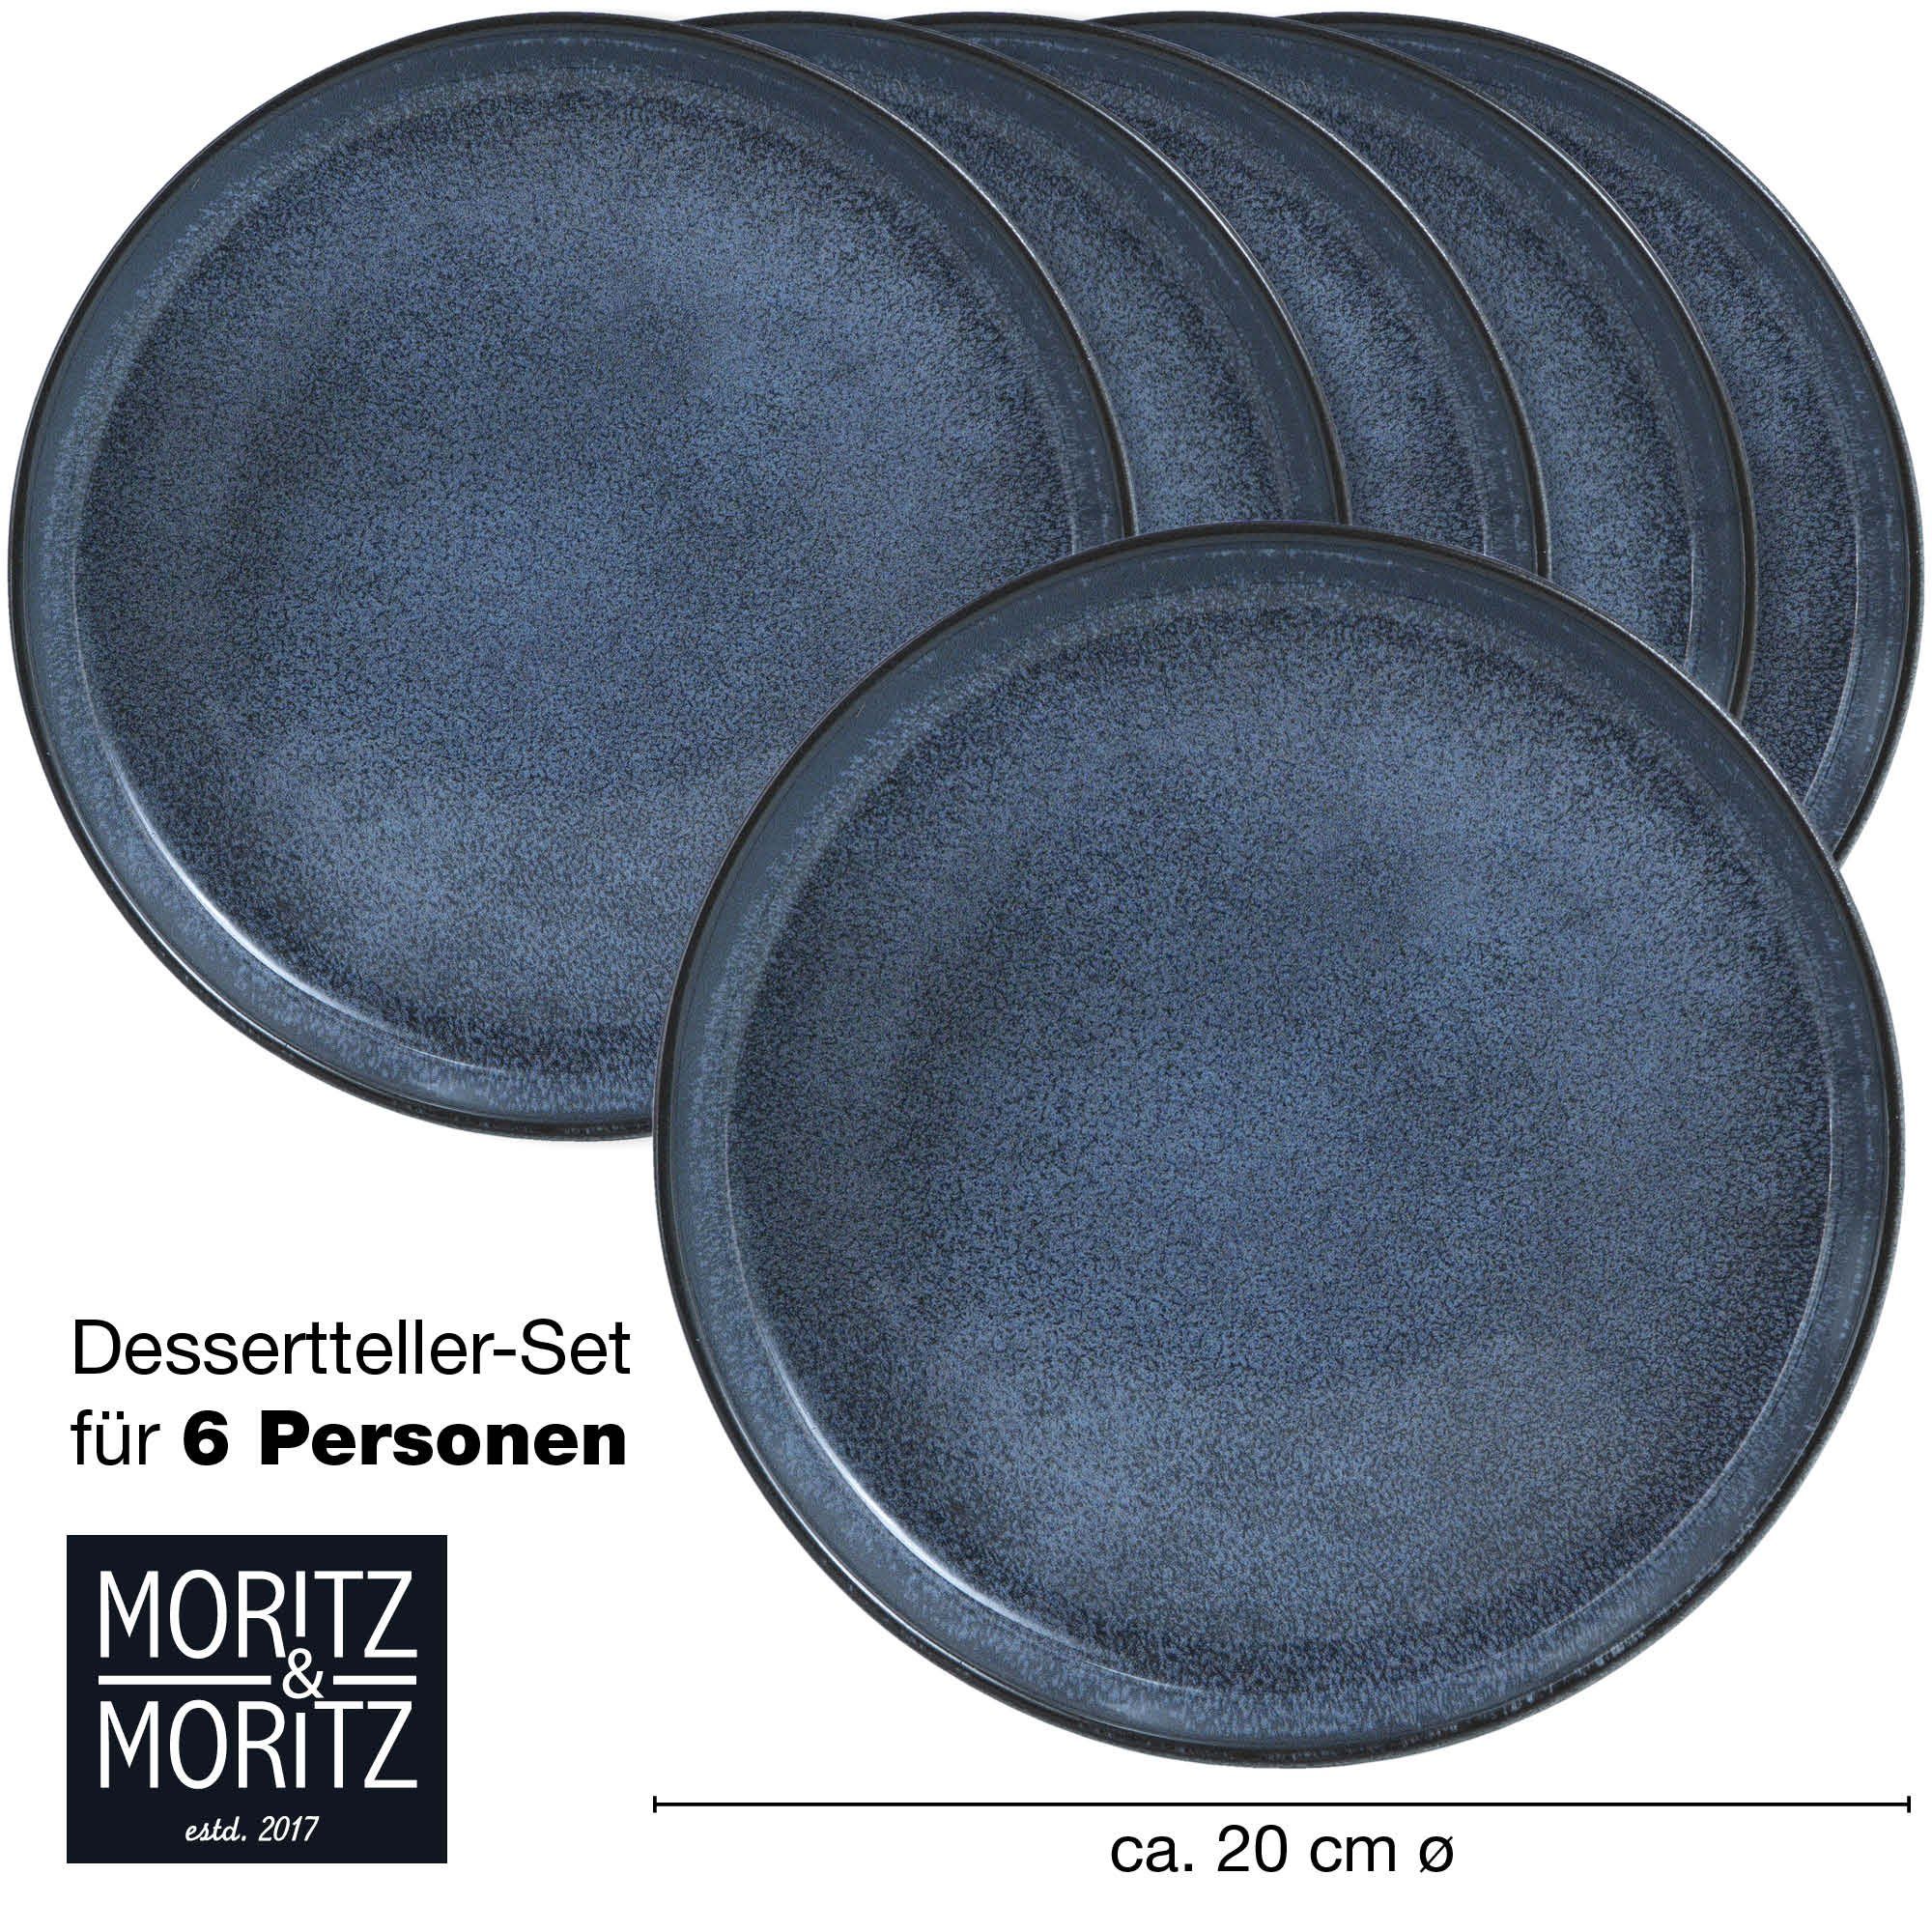 Moritz & Moritz für Teller 6 St), und Set (6 spülmaschinen- mikrowellengeeignet Personen Dessertteller - Dessert blau